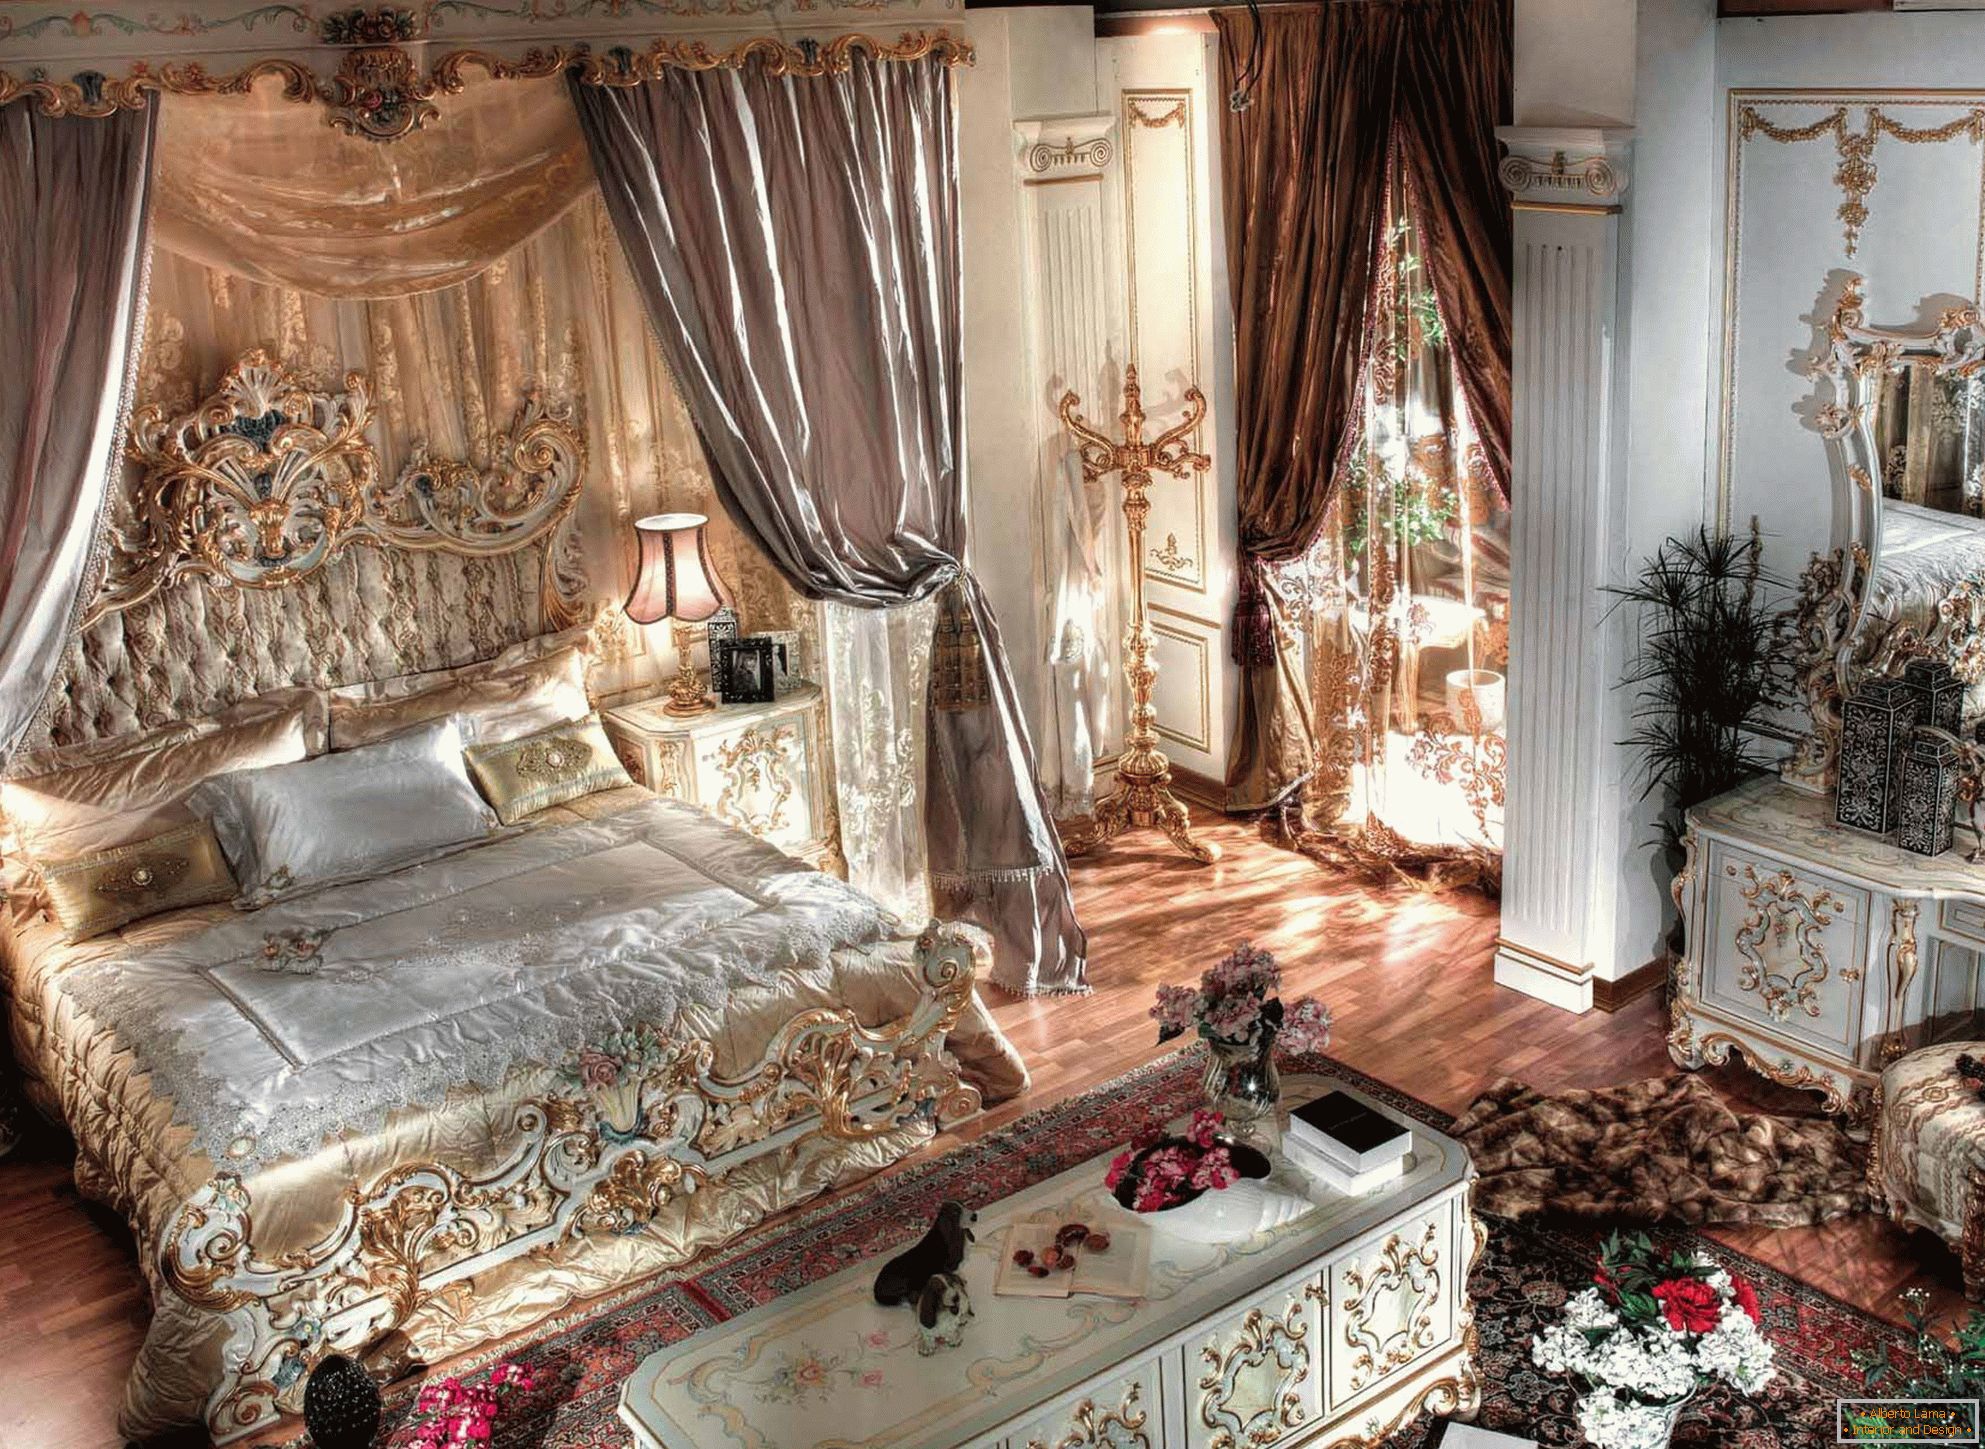 Луксузна барокна спална со високи тавани. Во центарот на композицијата е масивно кревет направен од дрво со врежан грб.